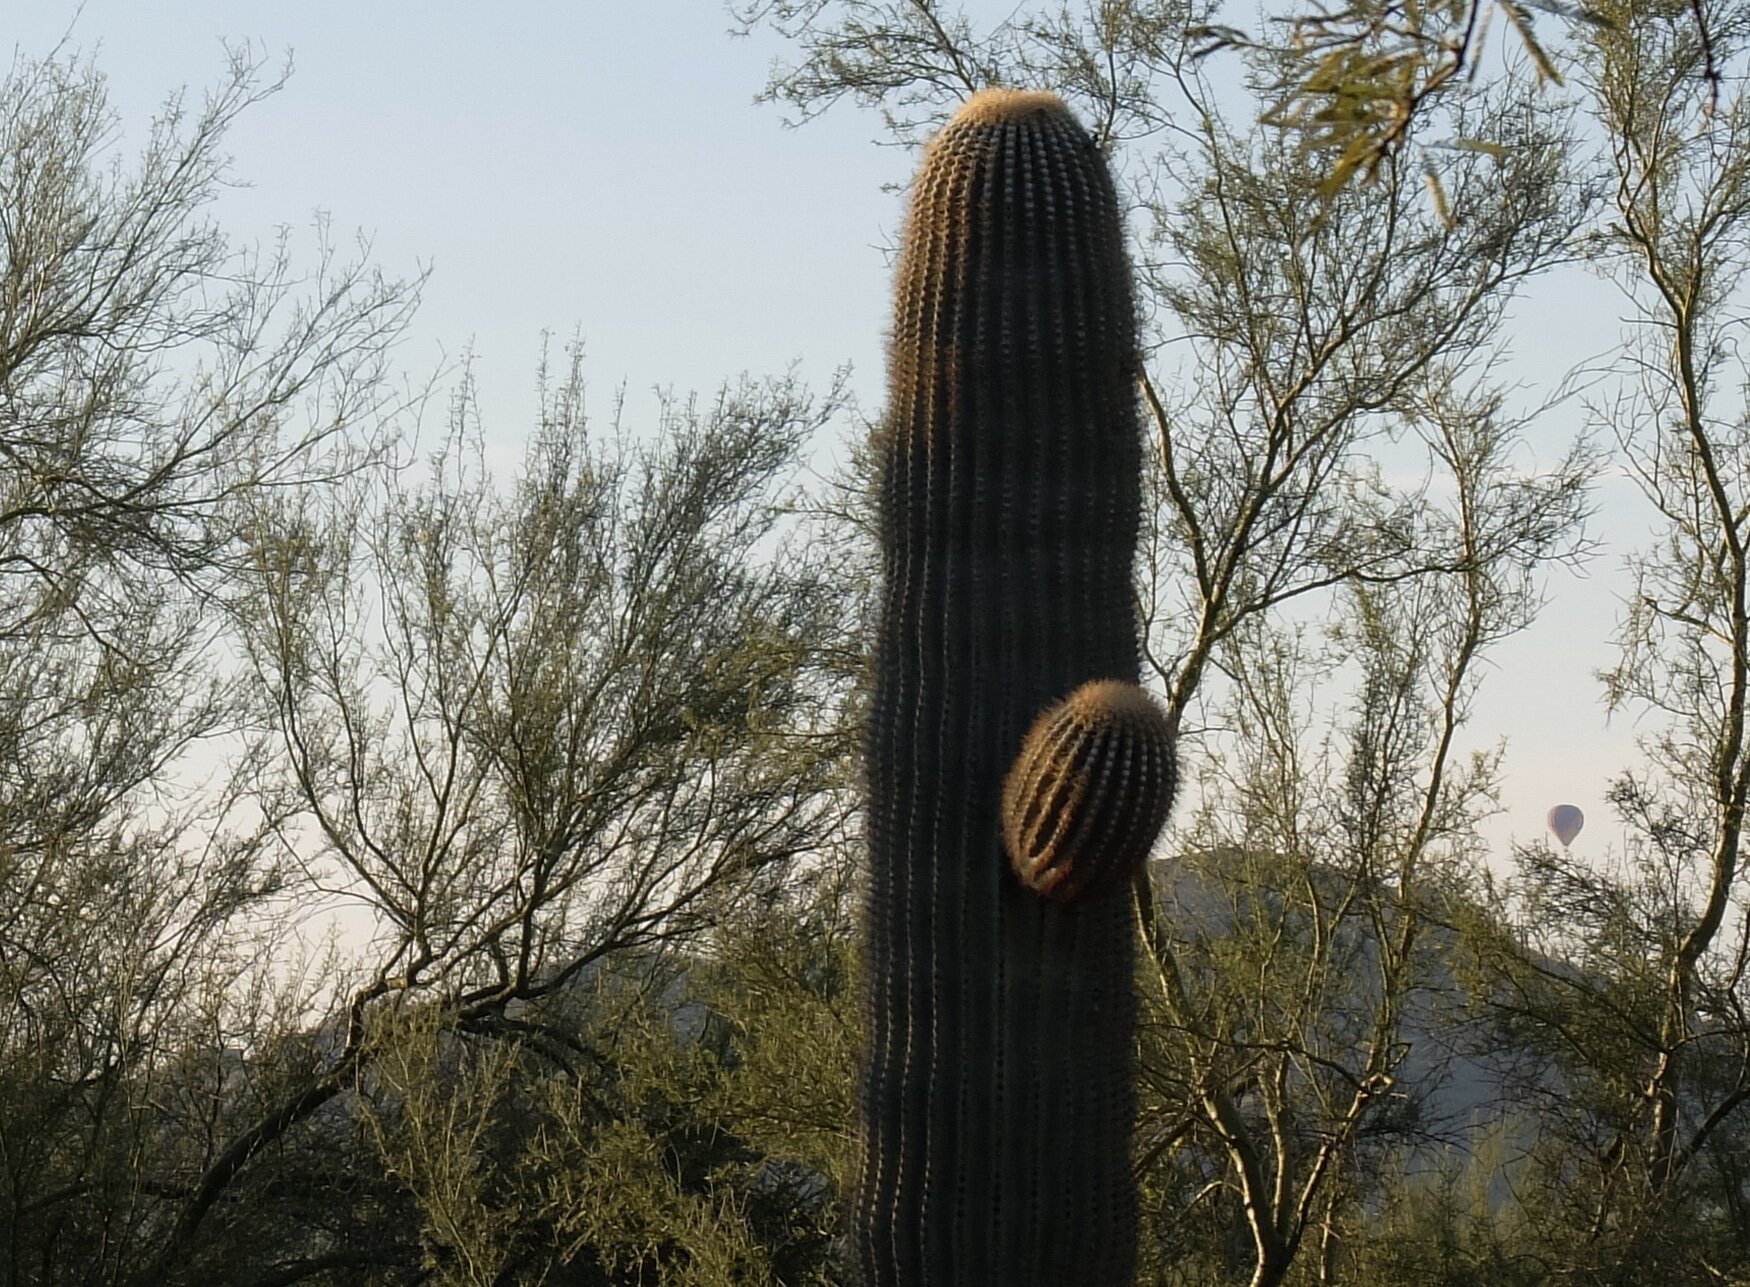 Saguaro (sawaro) cactus in Anthem, AZ.